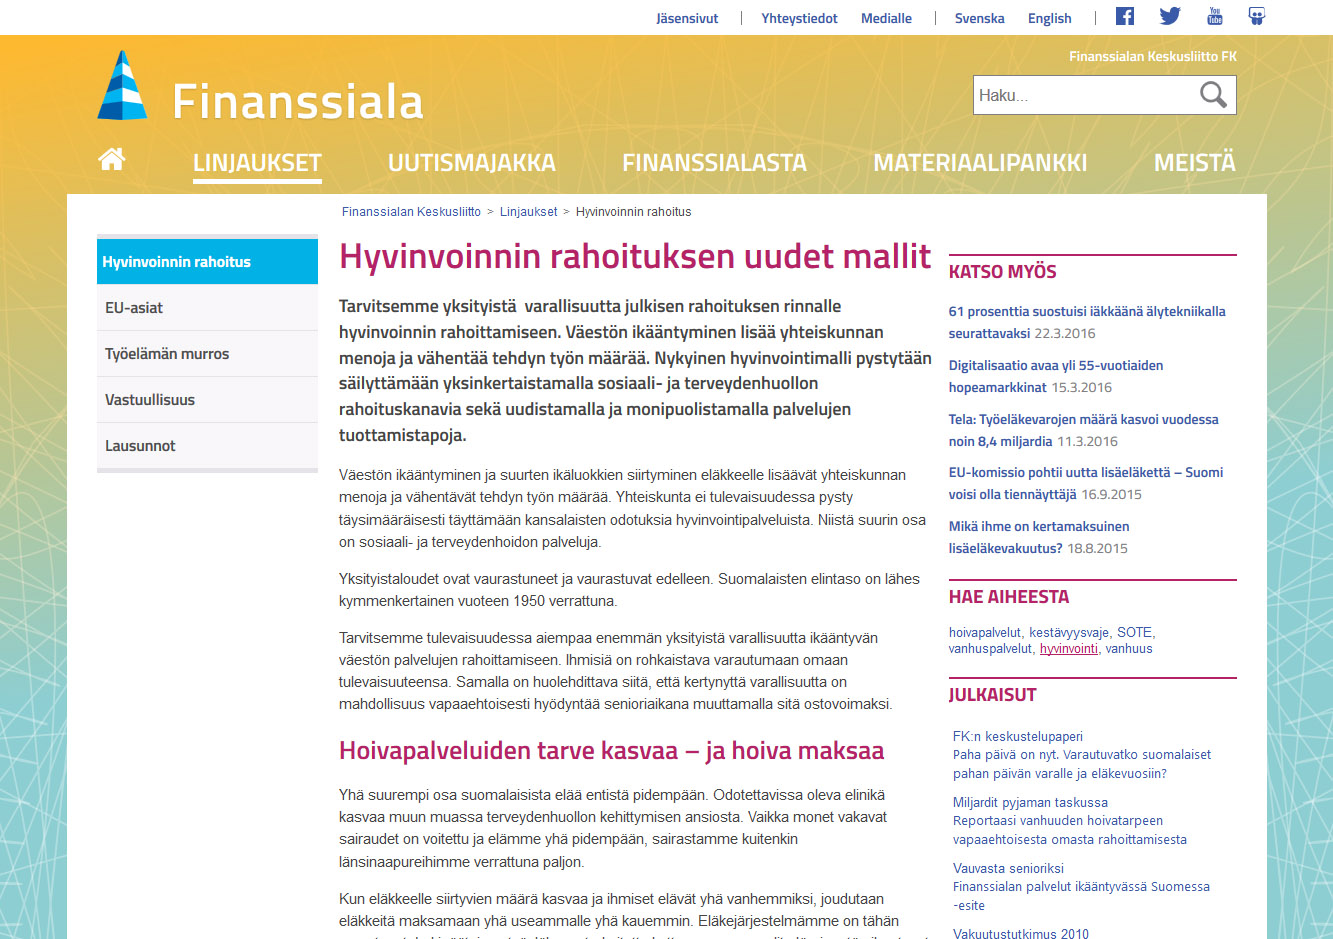 Case: Finanssiala.fi, Hyvinvointi